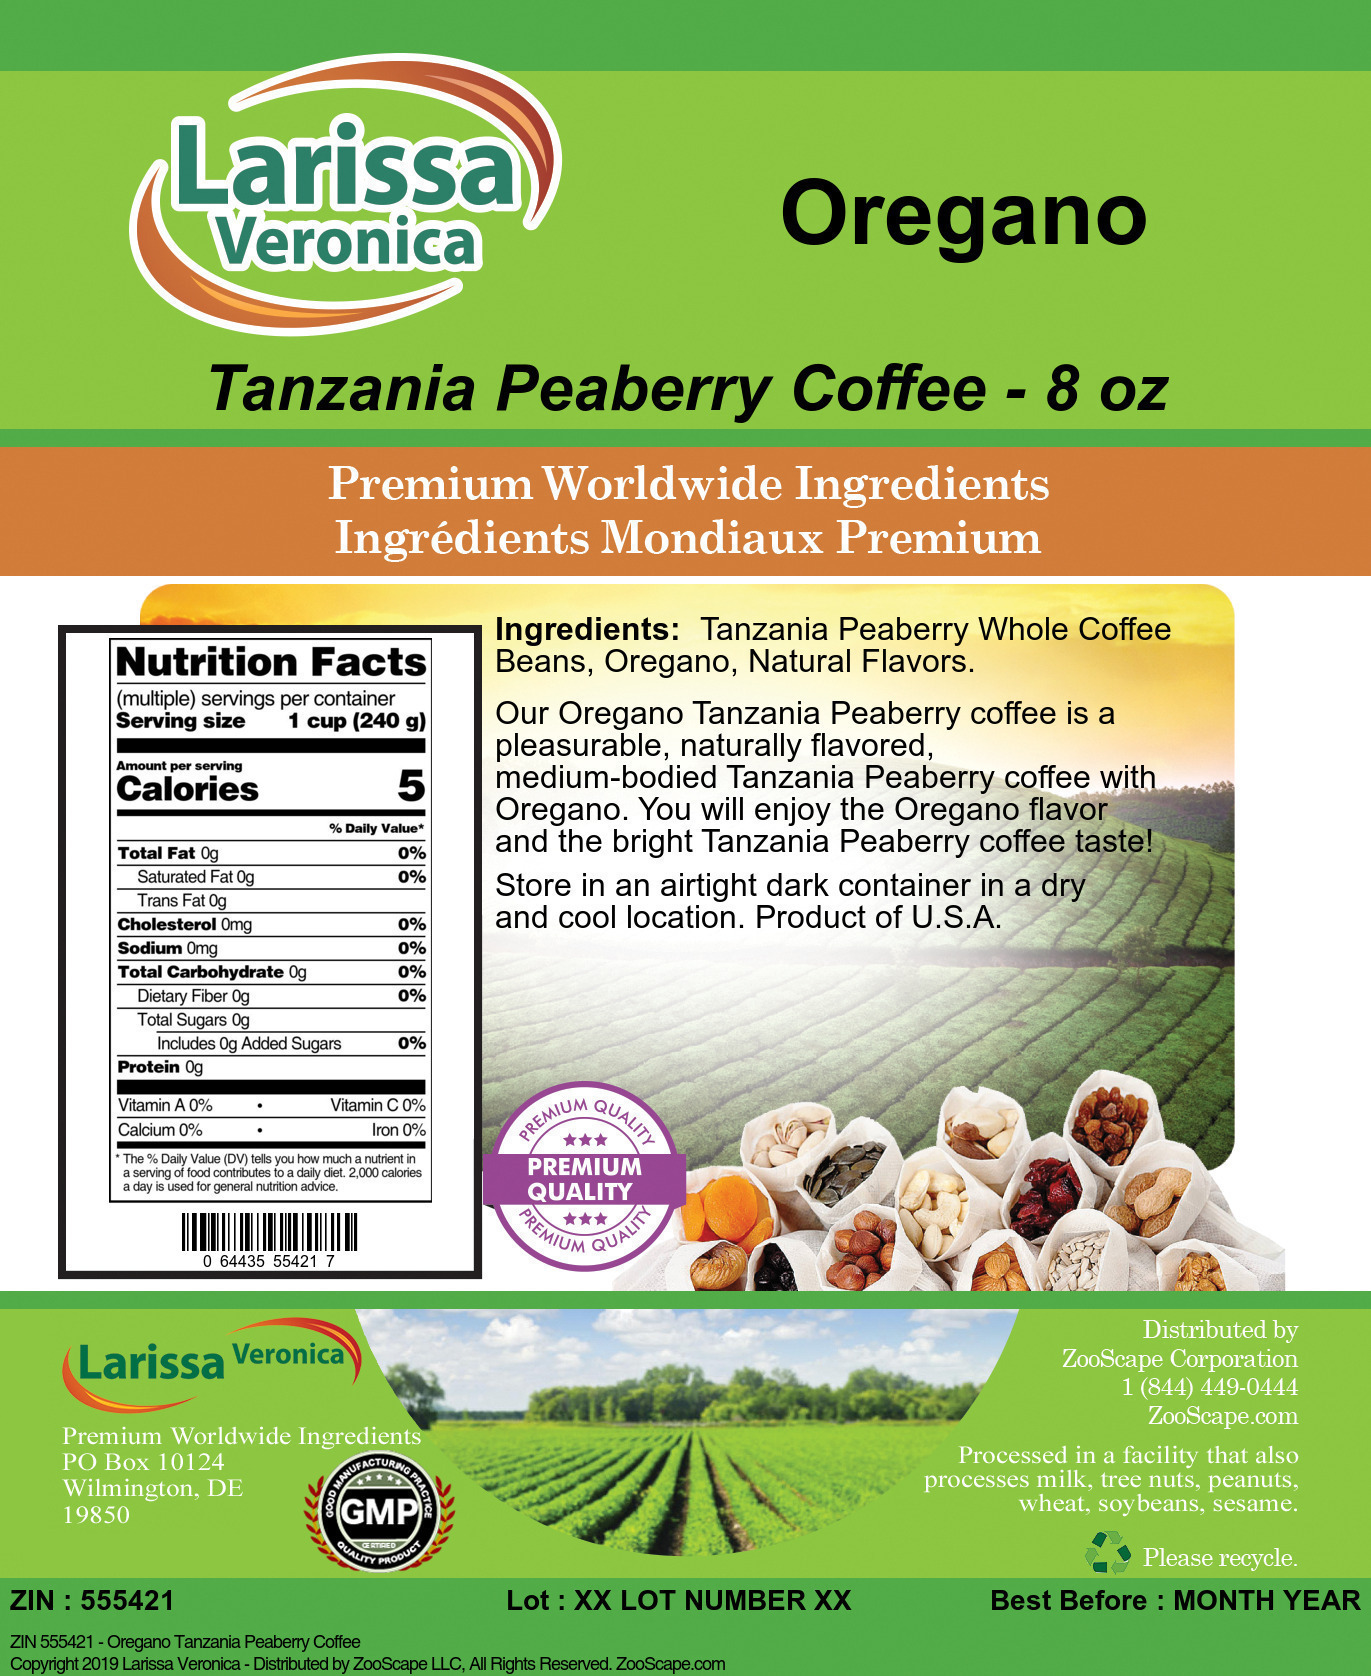 Oregano Tanzania Peaberry Coffee - Label